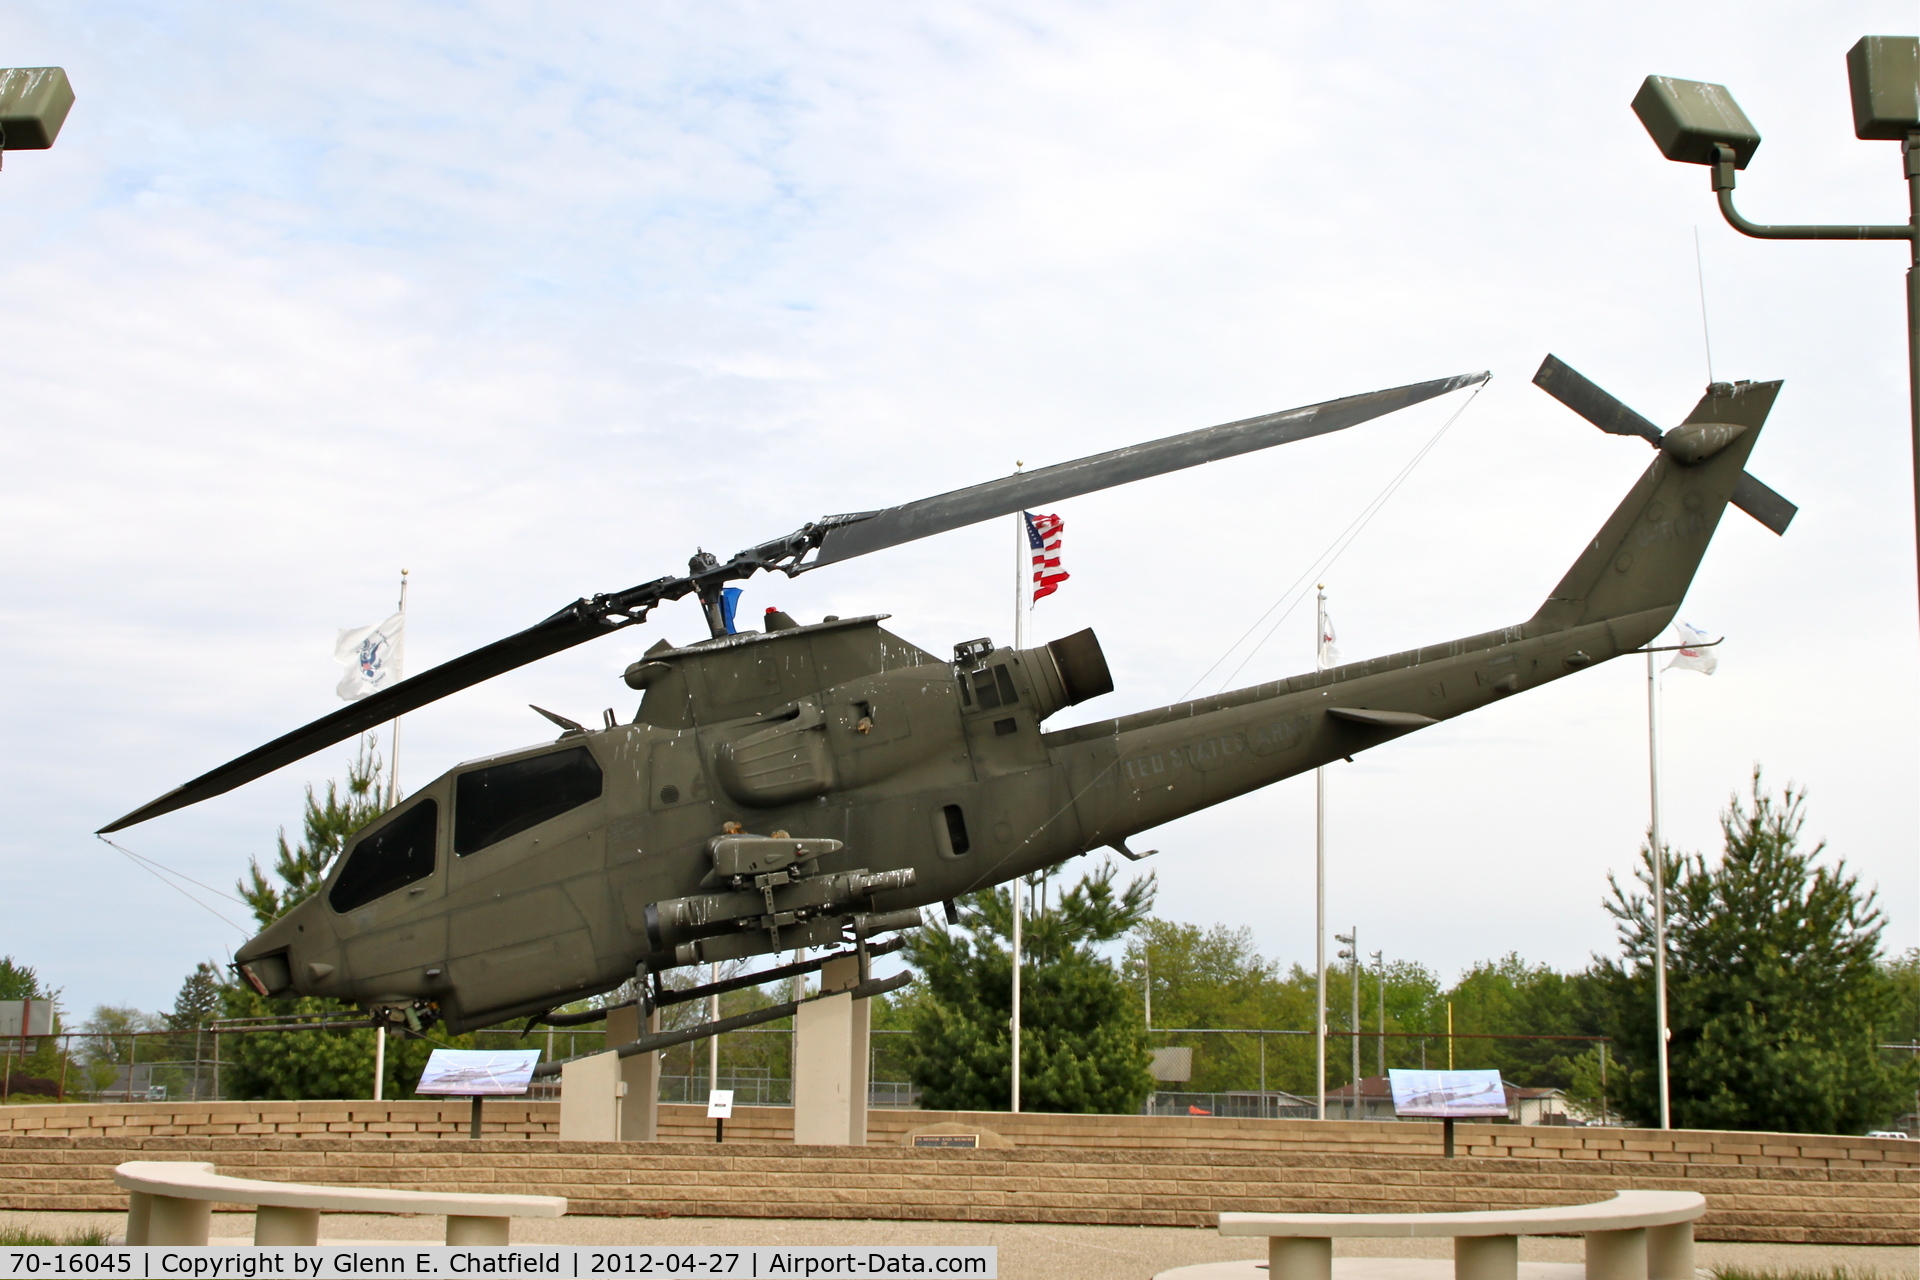 70-16045, 1972 Bell AH-1S Cobra C/N 20989, Veteran's memorial in Washington Park